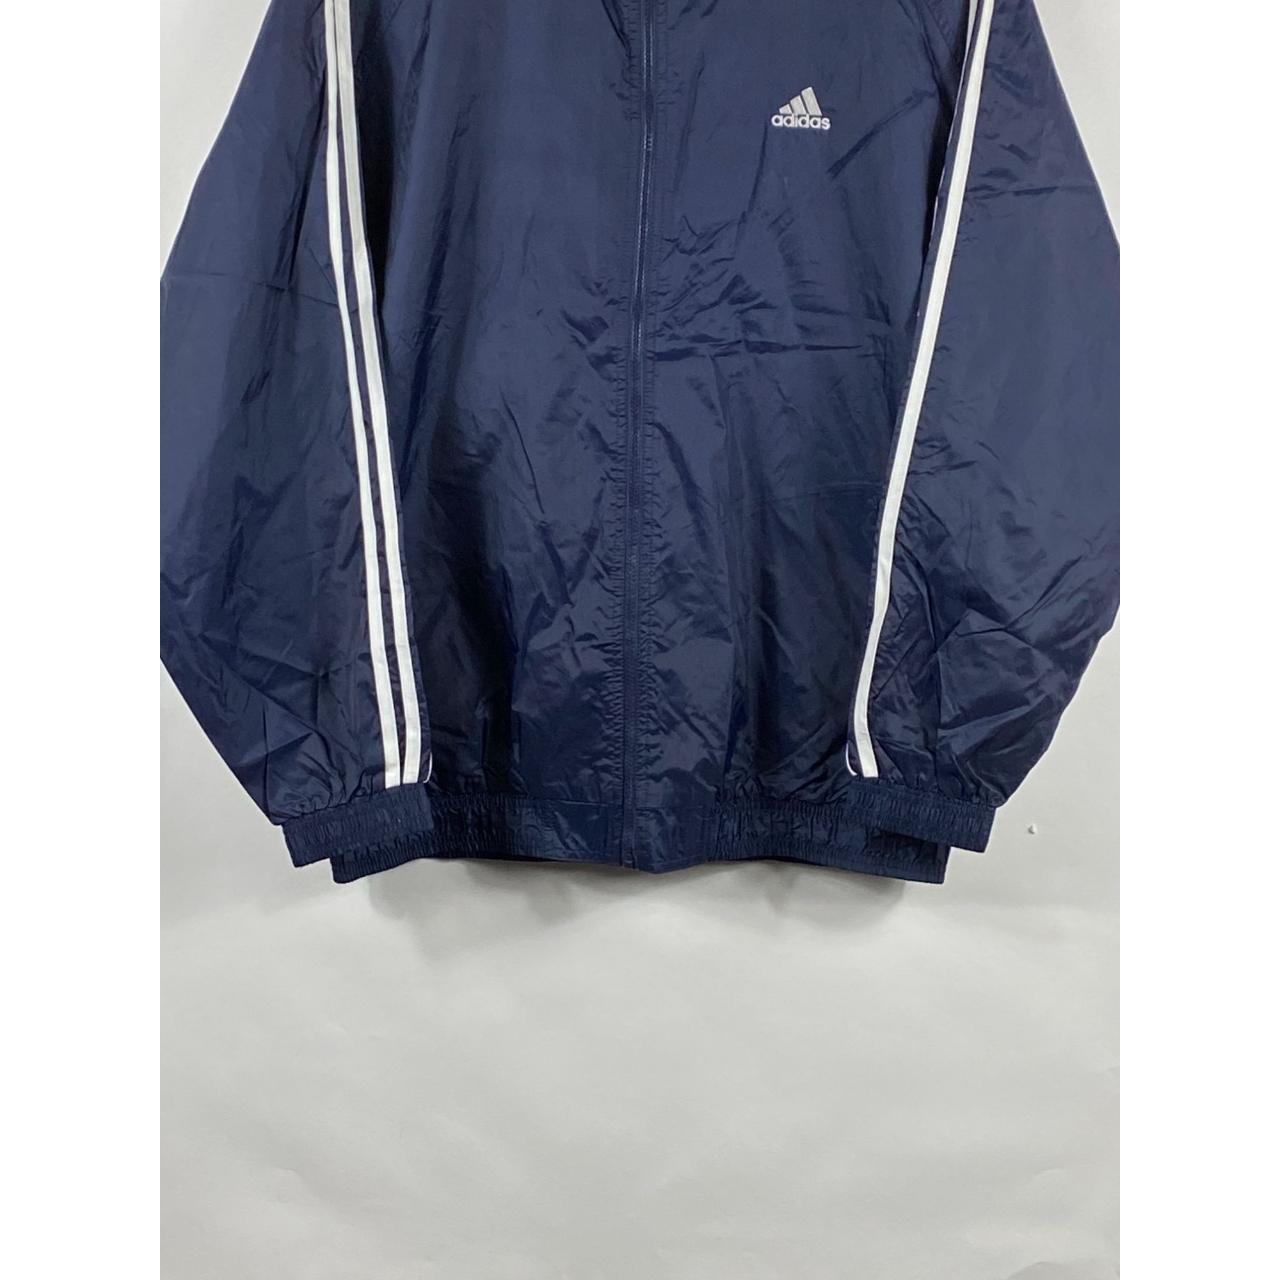 Vintage Adidas Zip Up Windbreaker Jacket Navy Blue... - Depop